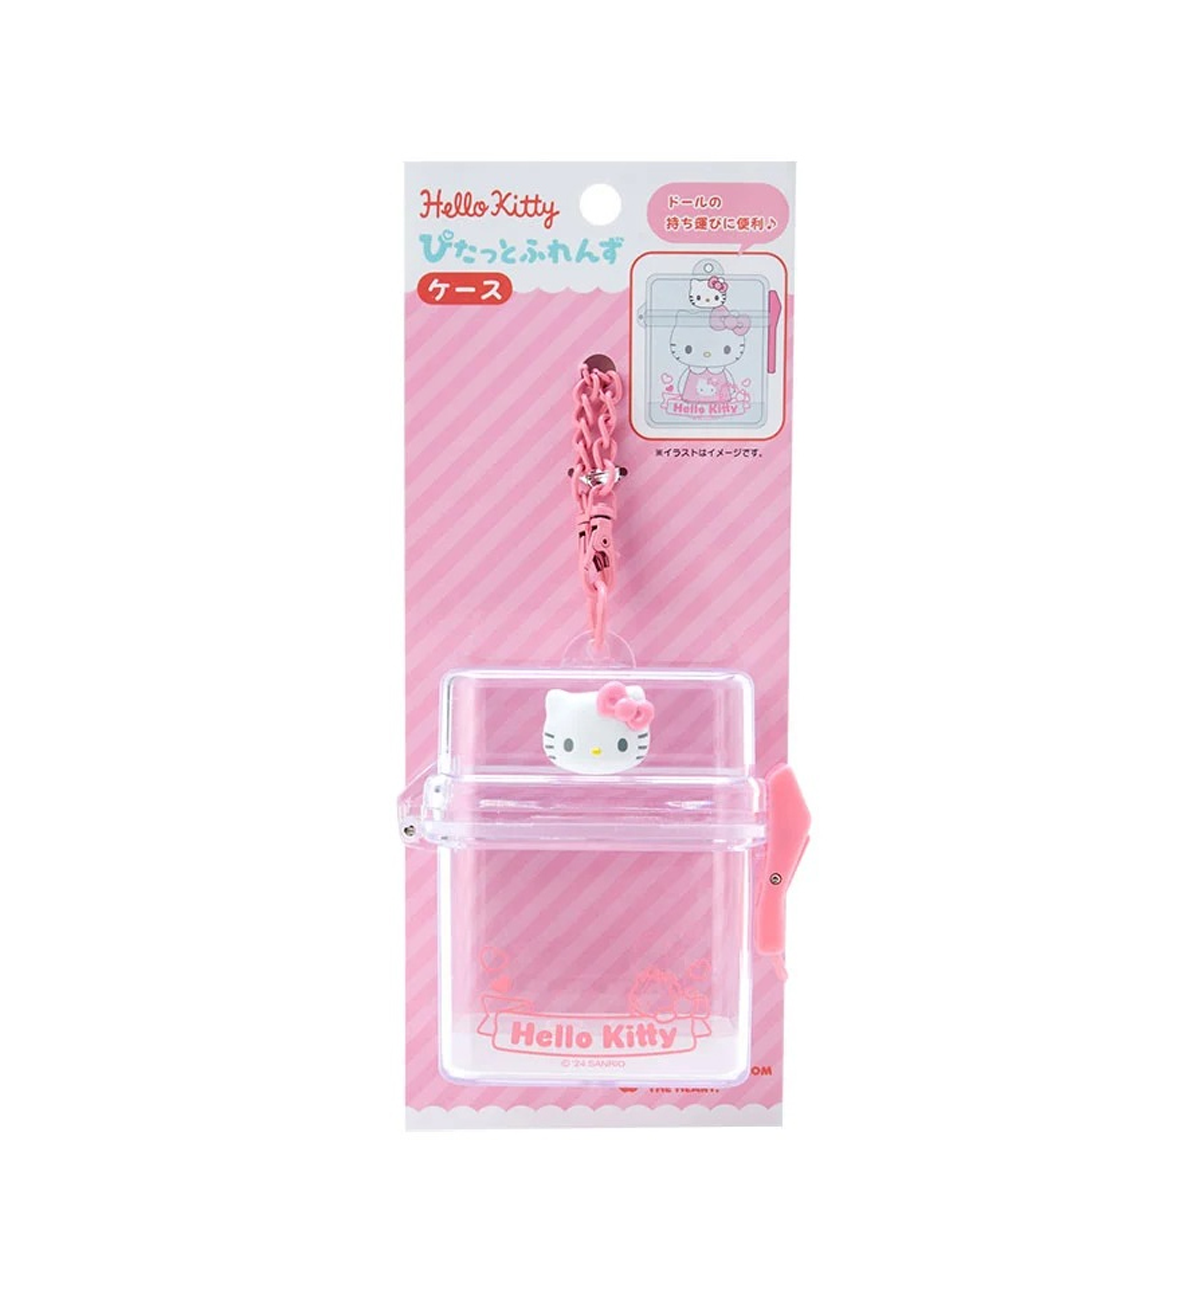 Sanrio Pittato Friends Mini Series Clear Case [Hello Kitty]